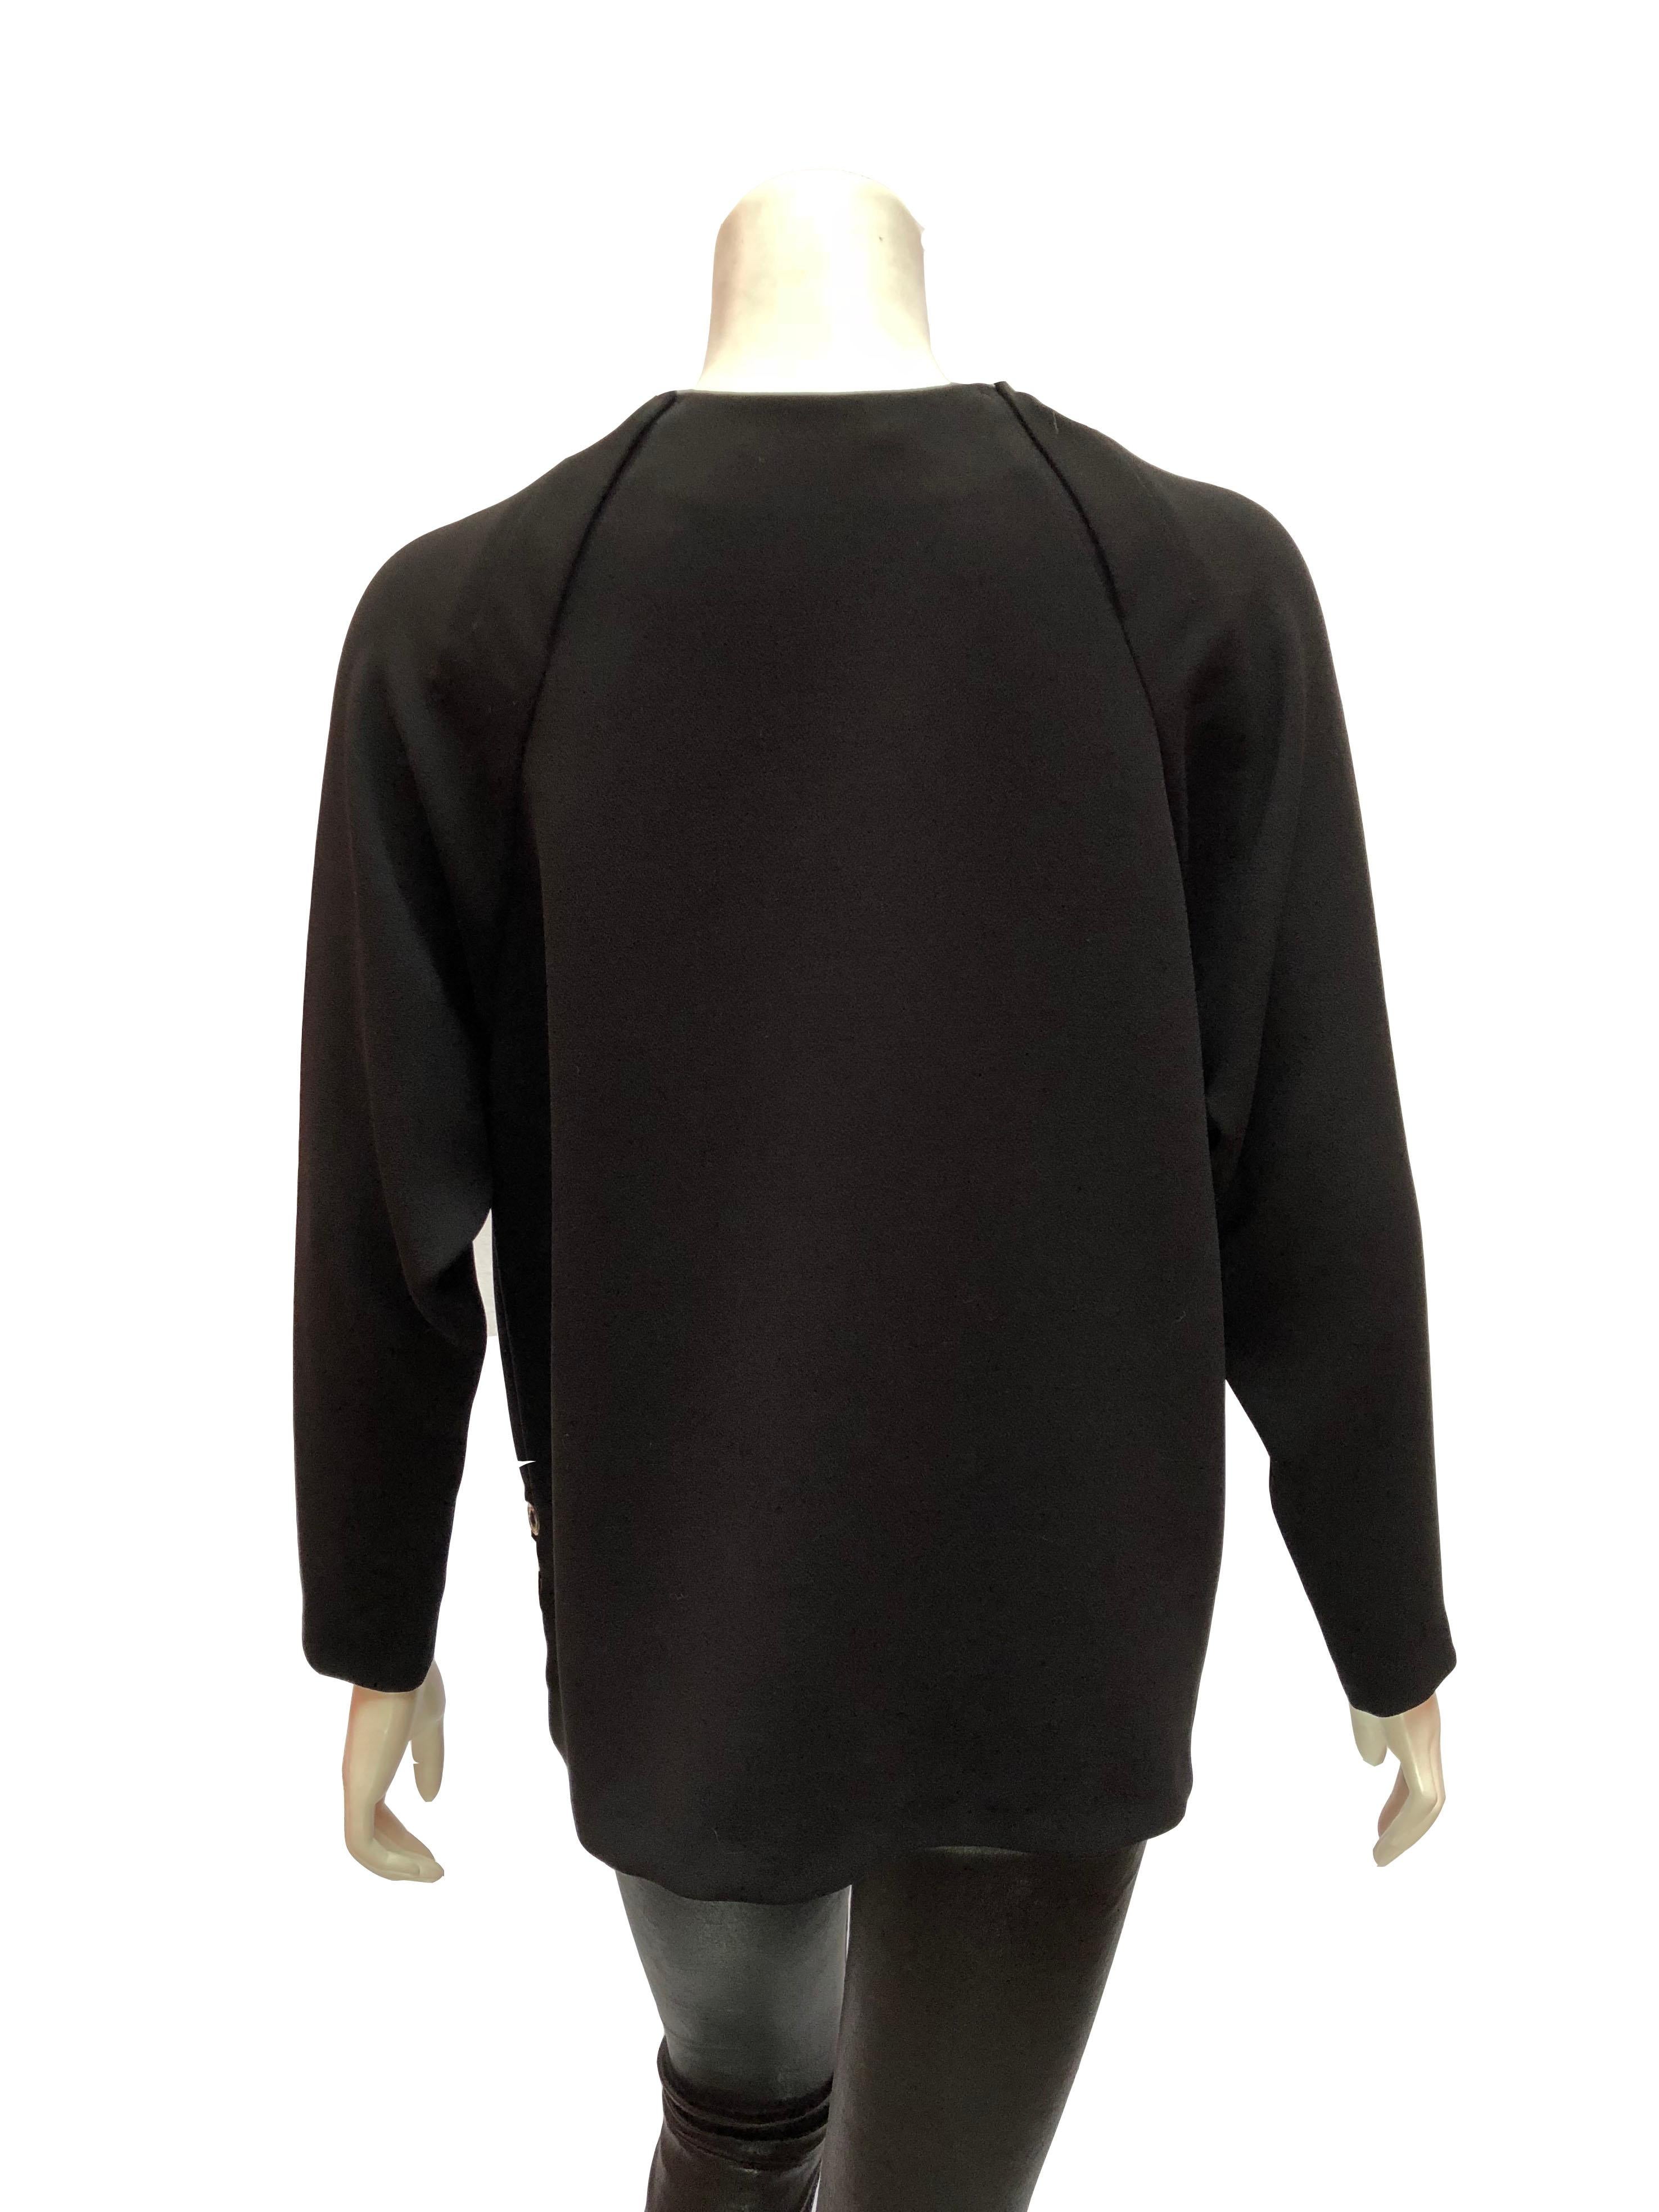 Anthony Vaccarello Schwarz Langärmelige Bluse aus Crêpe
Bluse aus dickem Crêpe zum Überziehen mit silberner Ösenverzierung. 
Mit Rundhalsausschnitt und langen Ärmeln
Größe Large. 
